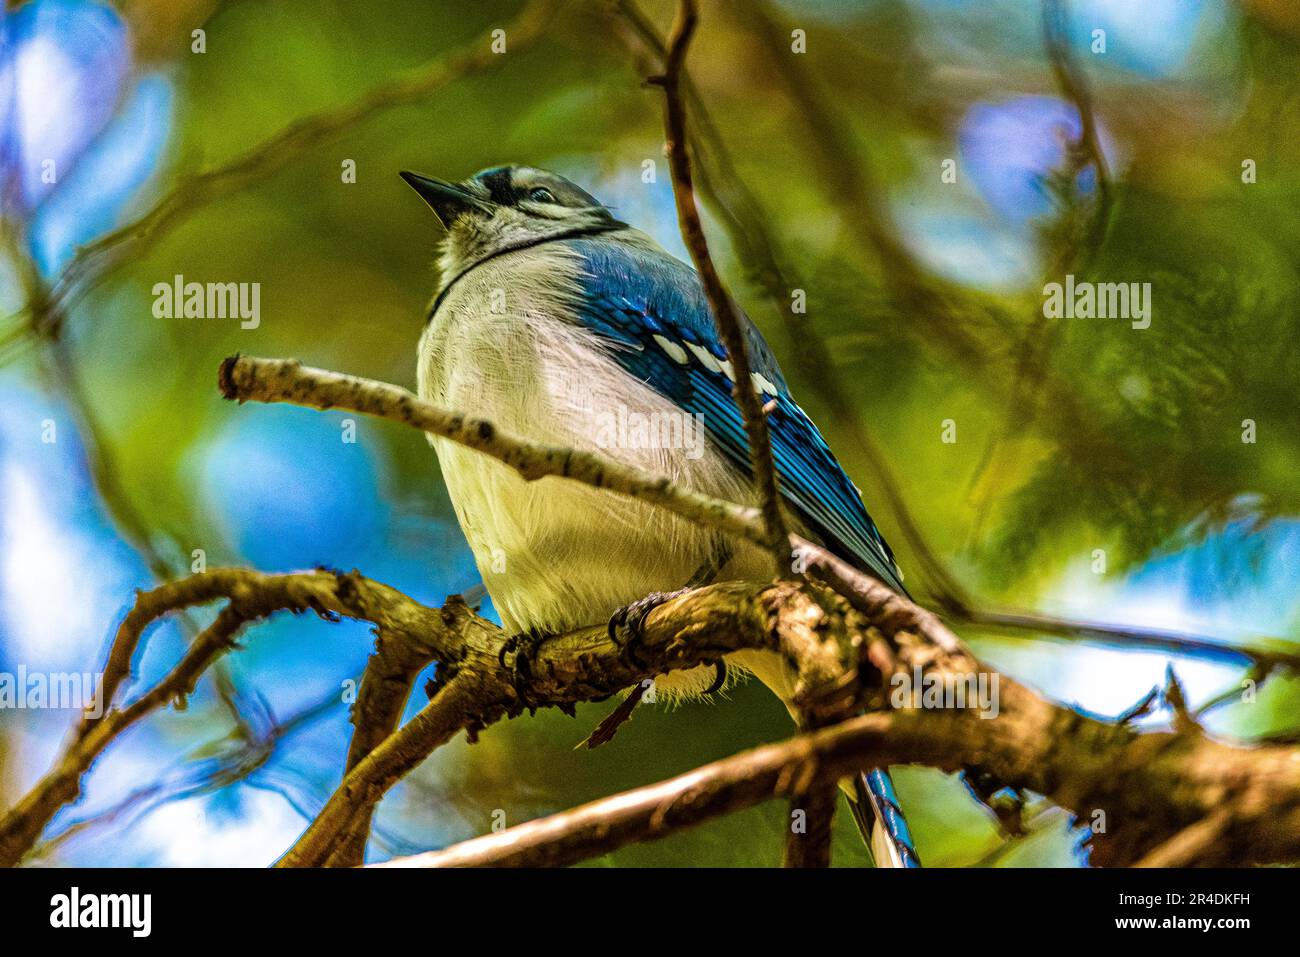 Blue Jay. Uccelli del Canada. Nel bosco canadese, ho incontrato un uccello, il simbolo della squadra di baseball Blue Jay di Toronto. Foto Stock